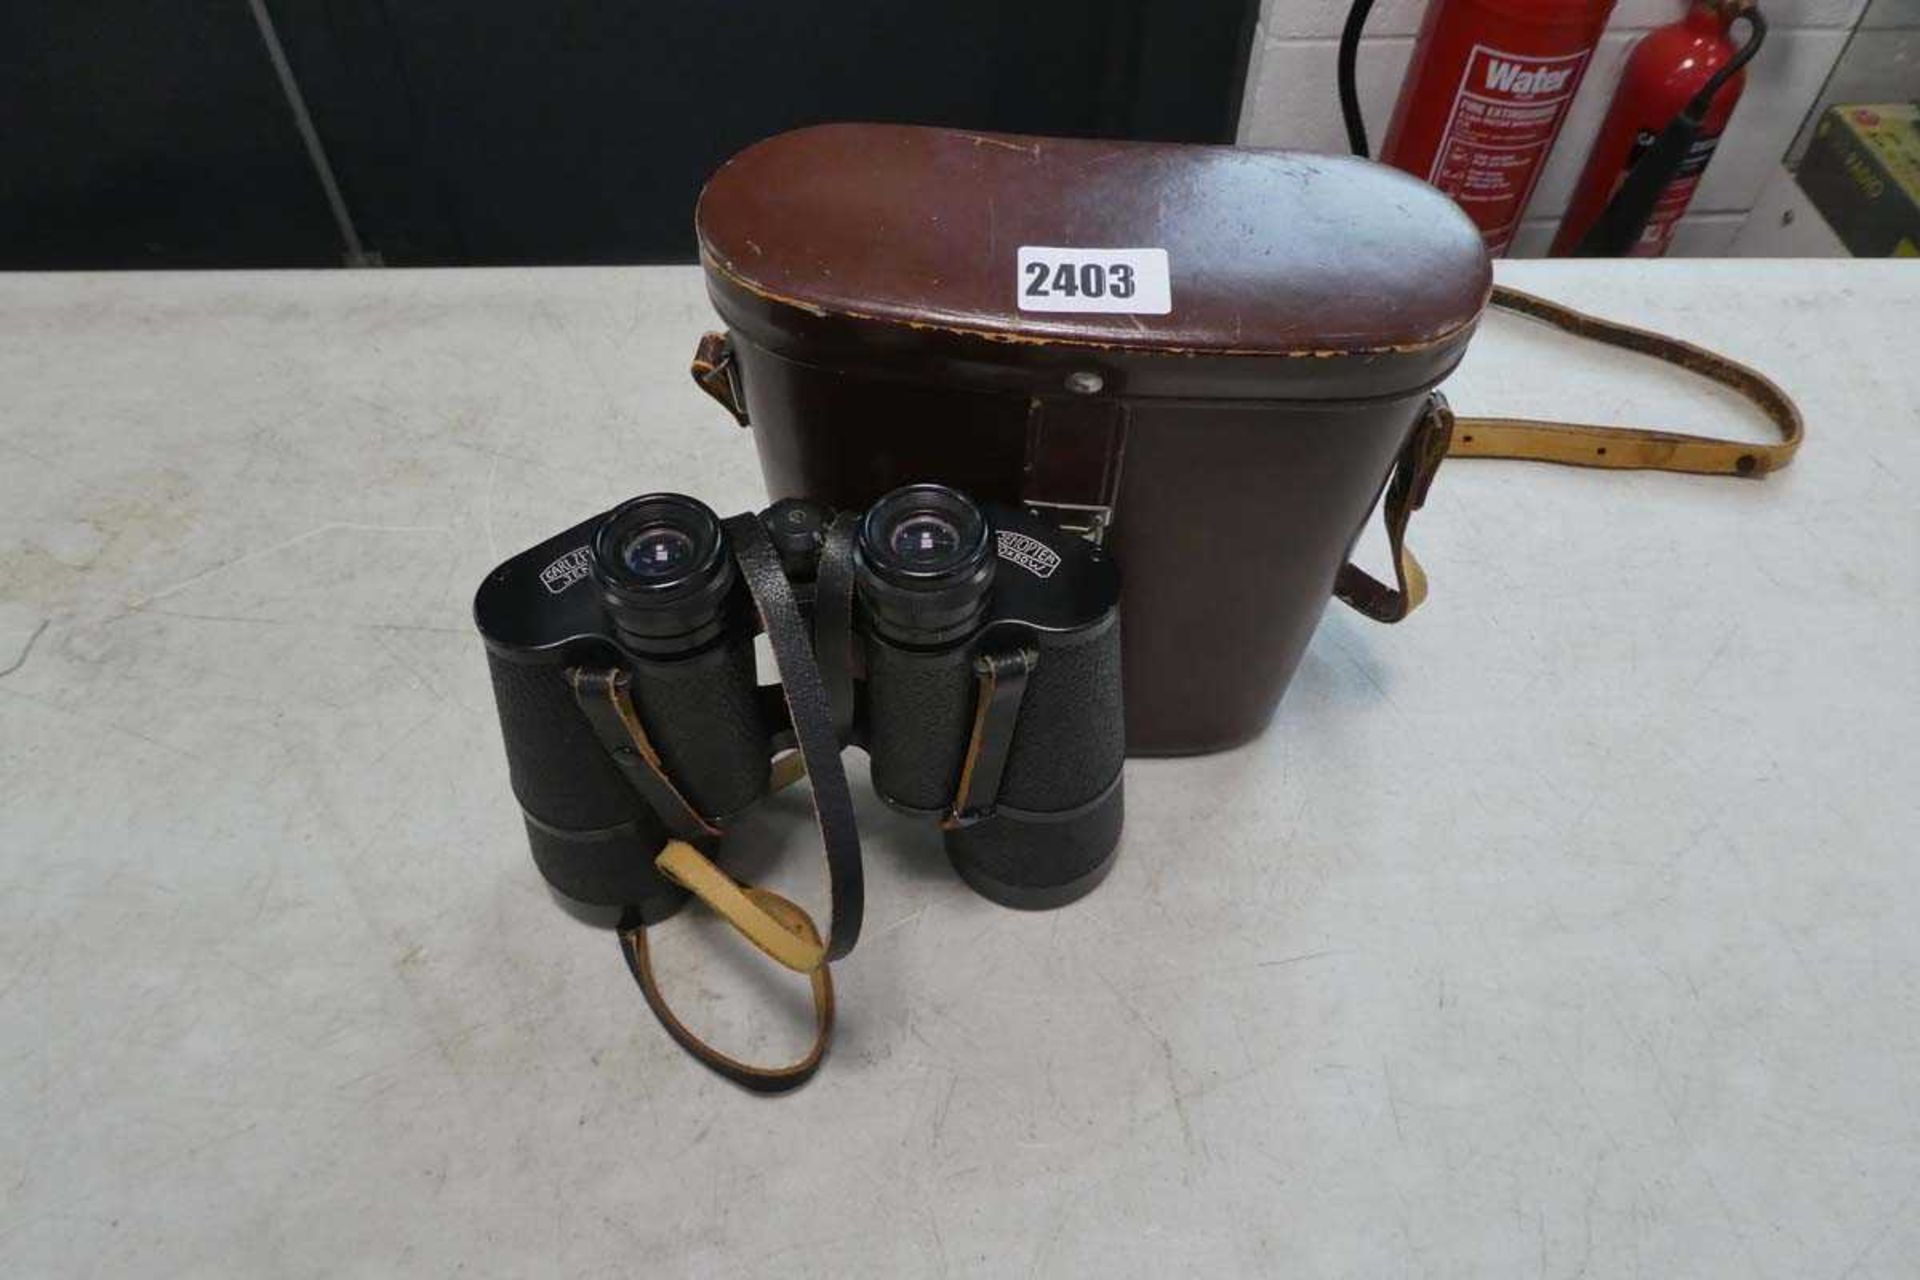 Carl Zeiss Jena 10x50 W binoculars with leather case